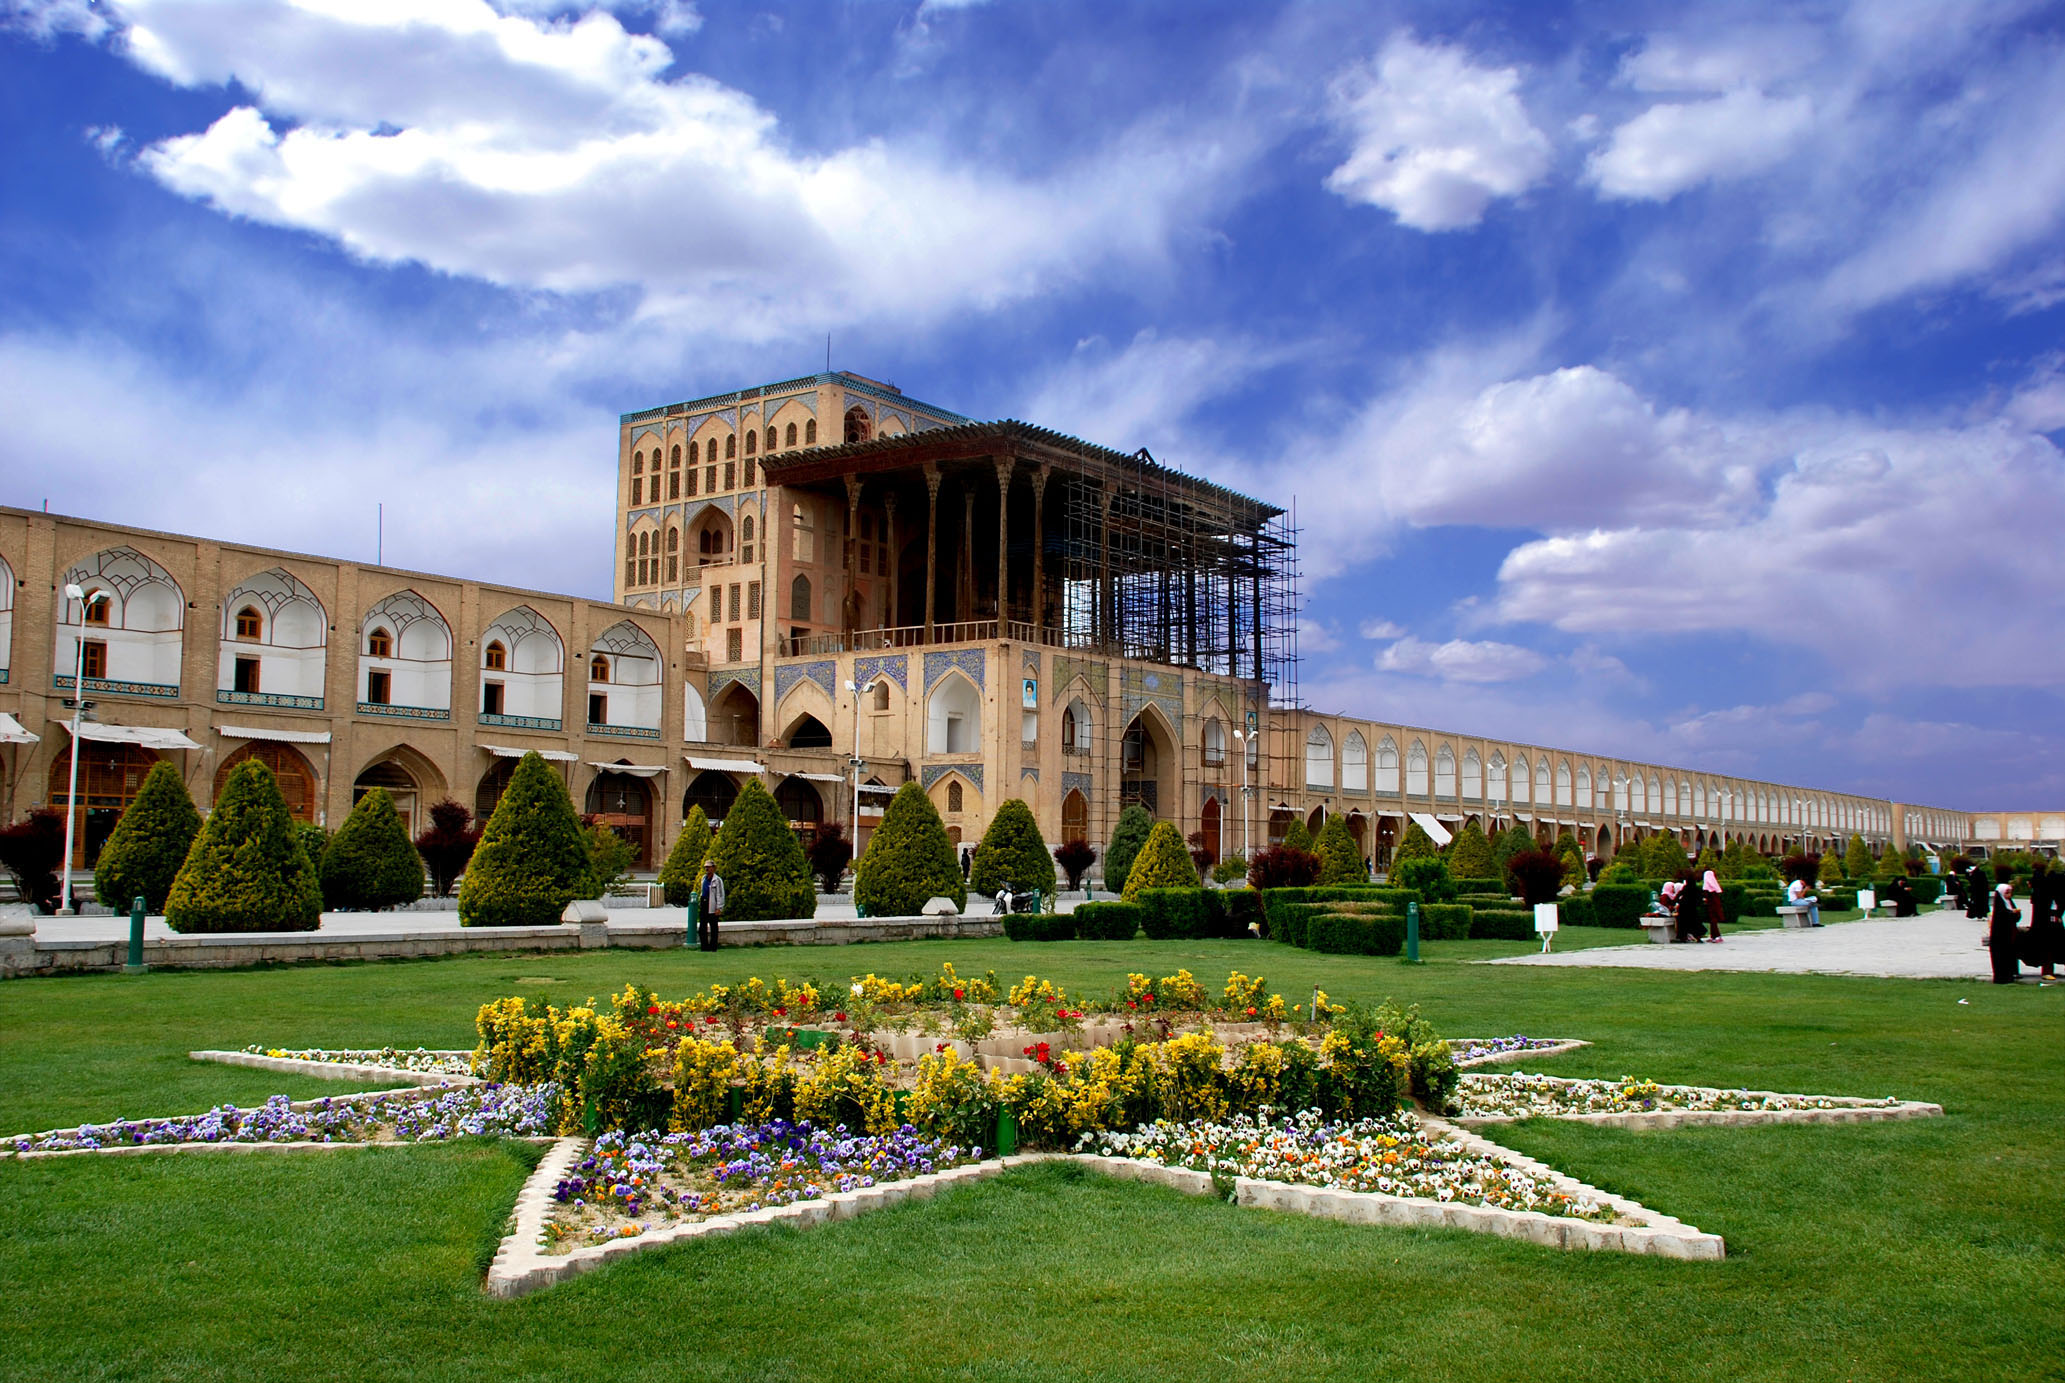 اینکه اصفهان می تواند مقصد یک ماه عسل عالی باشد دیگر جای تعریف و تمجید ندارد.